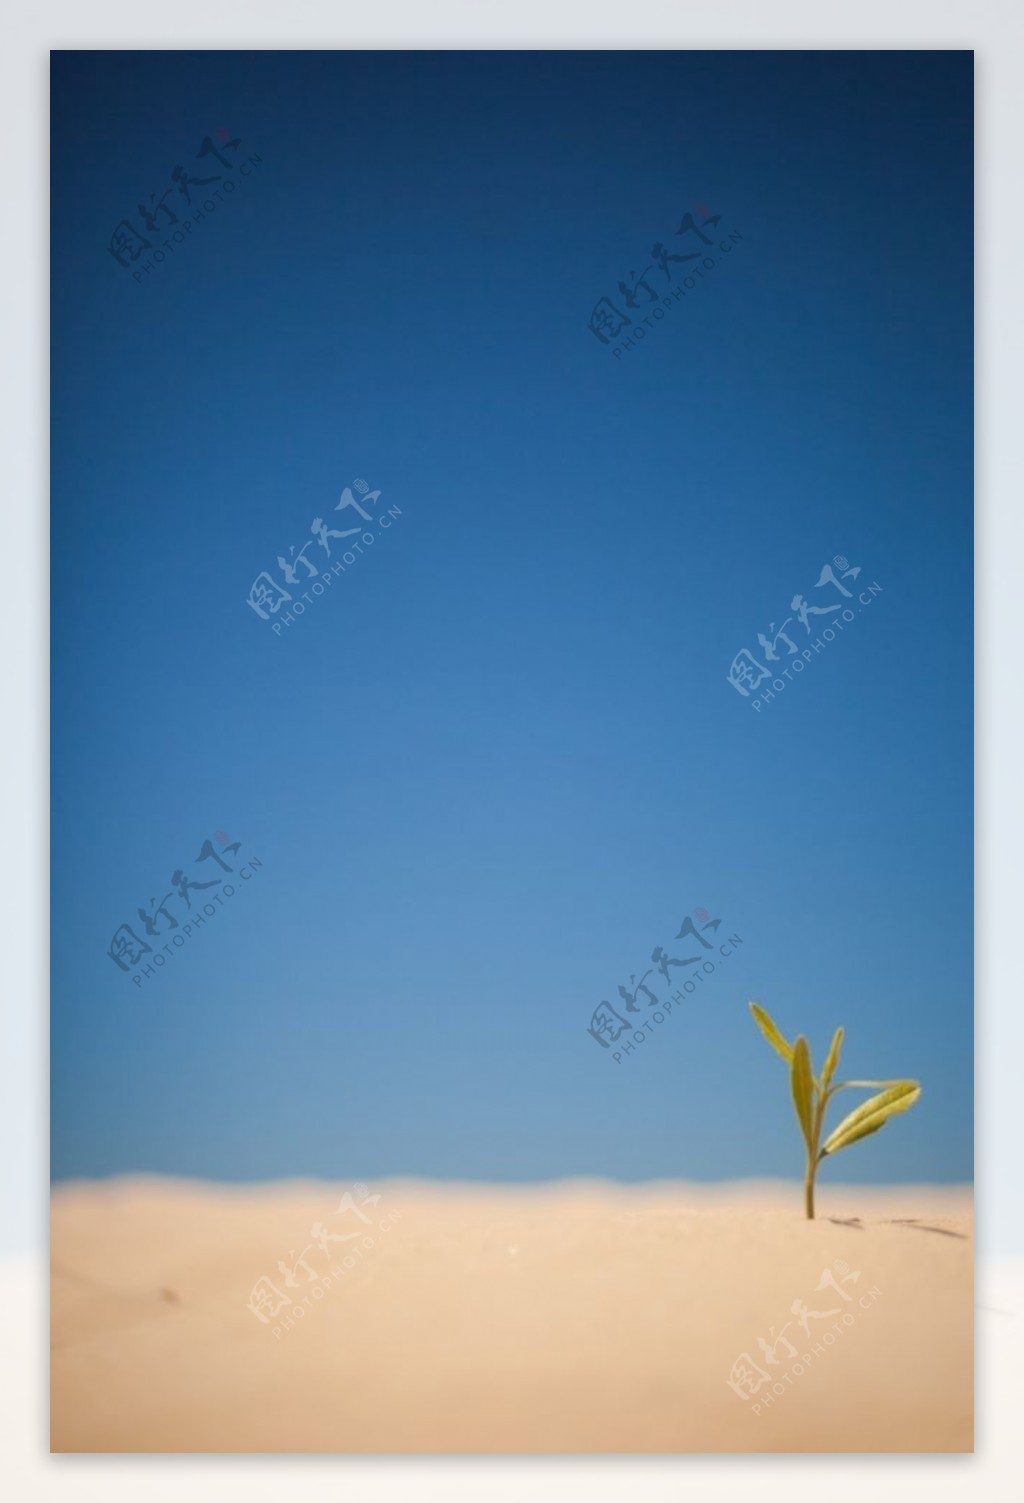 沙漠中的小草